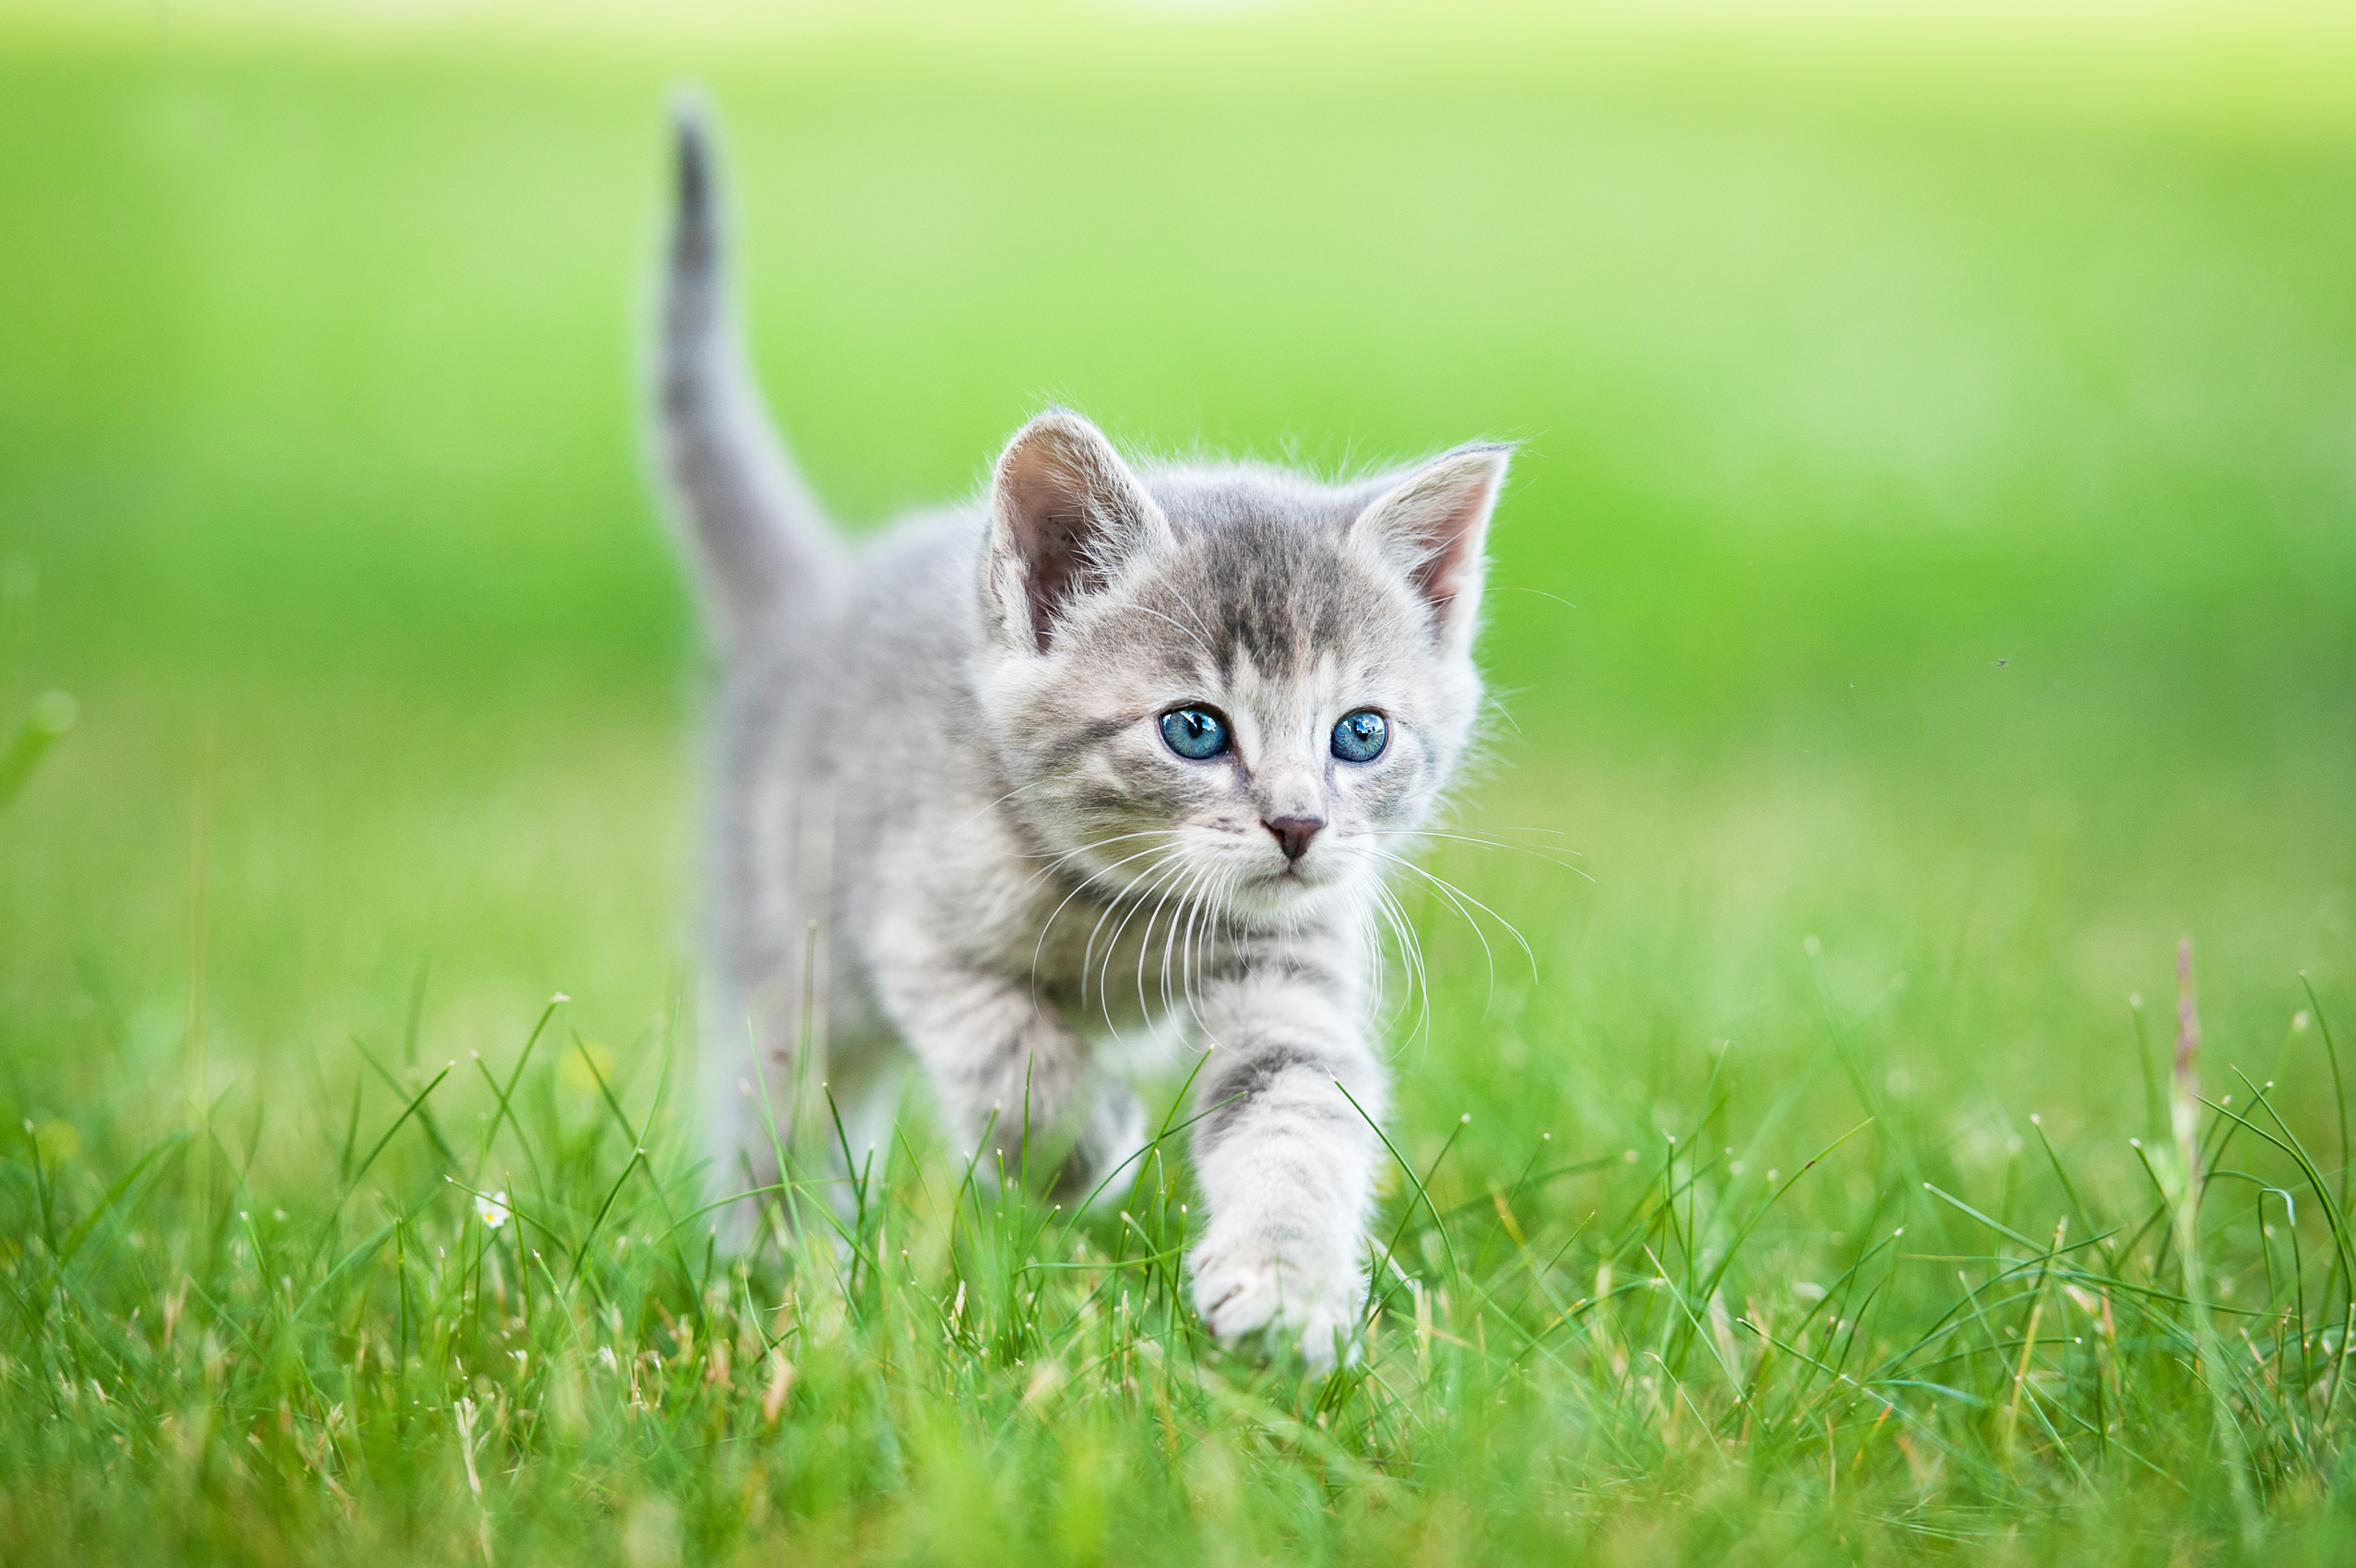 A grey kitten walking through the grass